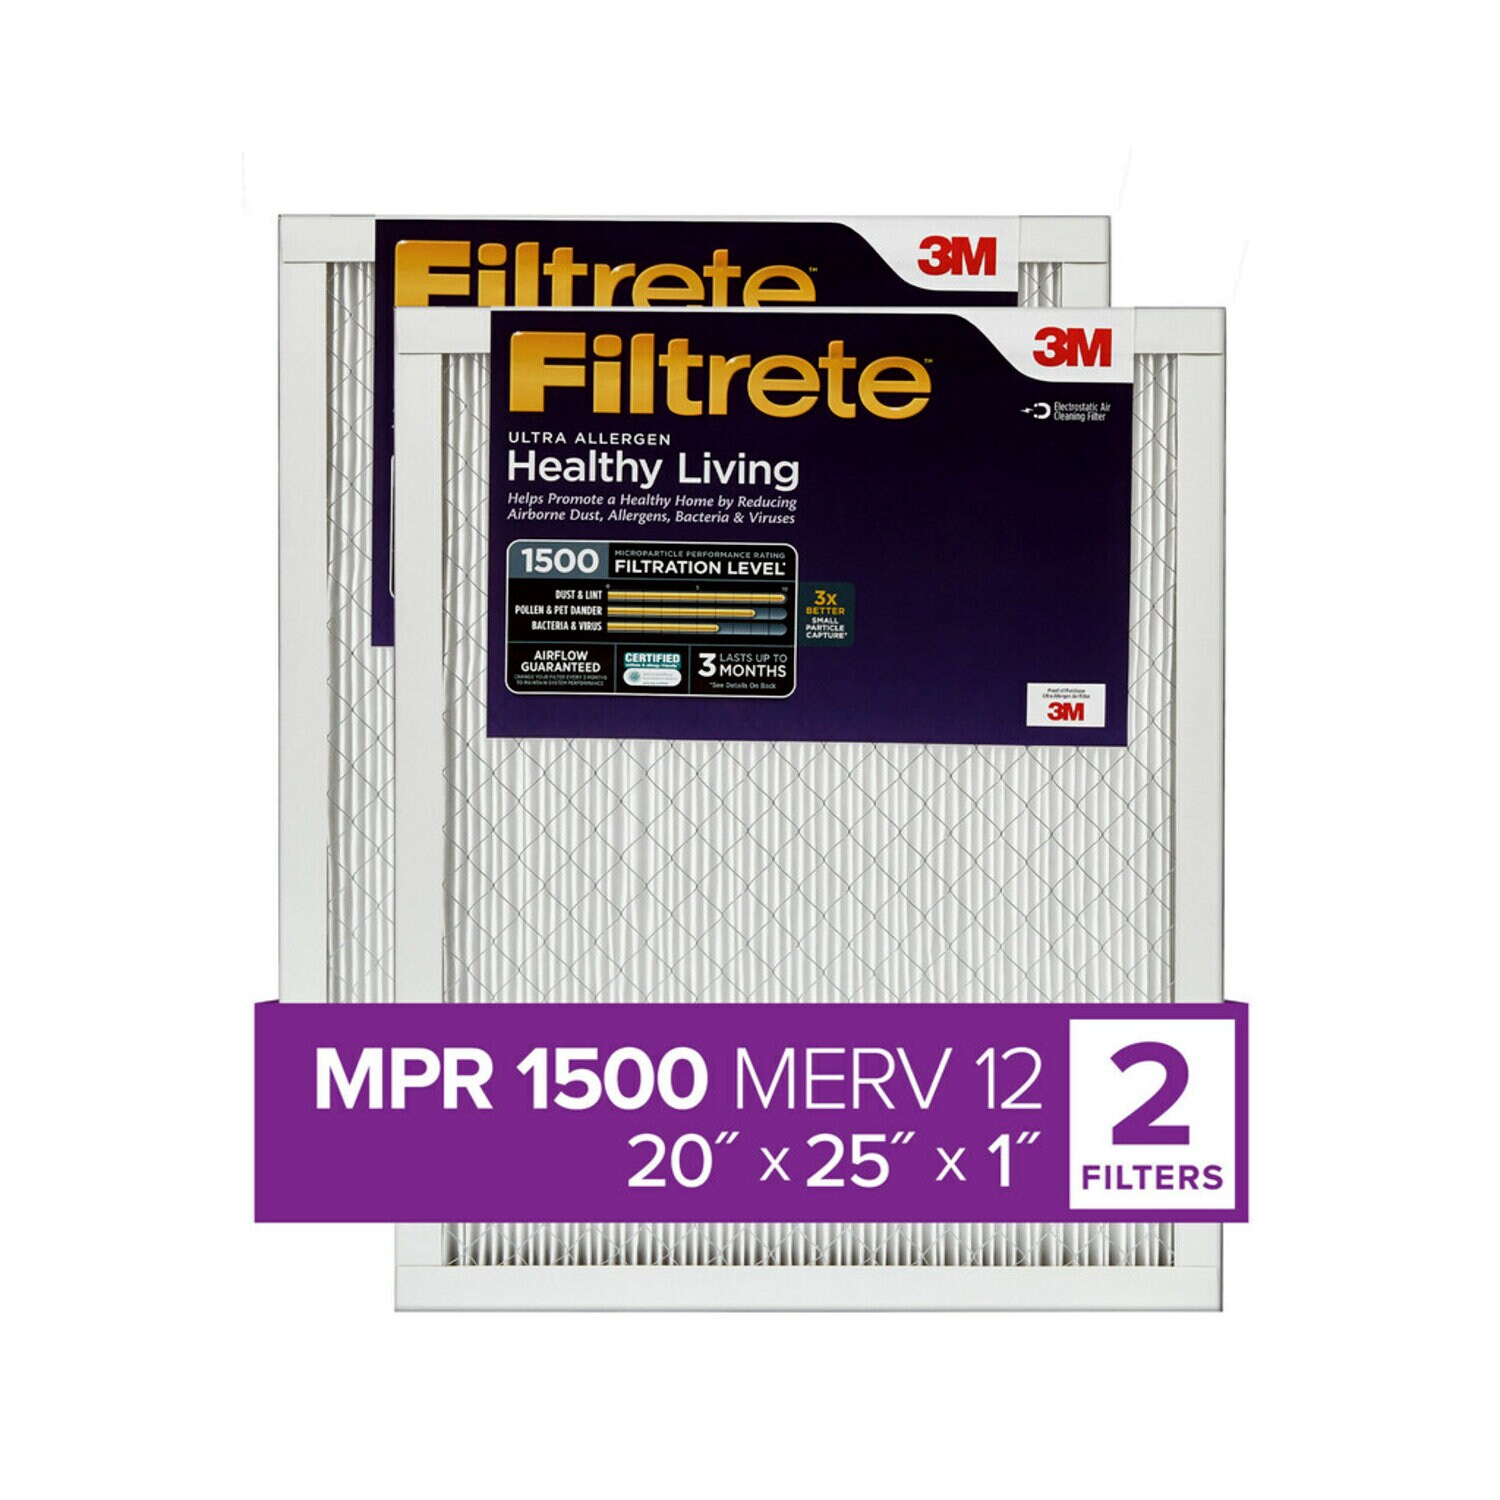 7100269662 - Filtrete Ultra Allergen Reduction Filter UR03-2PK-1E, 20 in x 25 in x 1 in (50.8 cm x 63.5 cm x 2.5 cm)